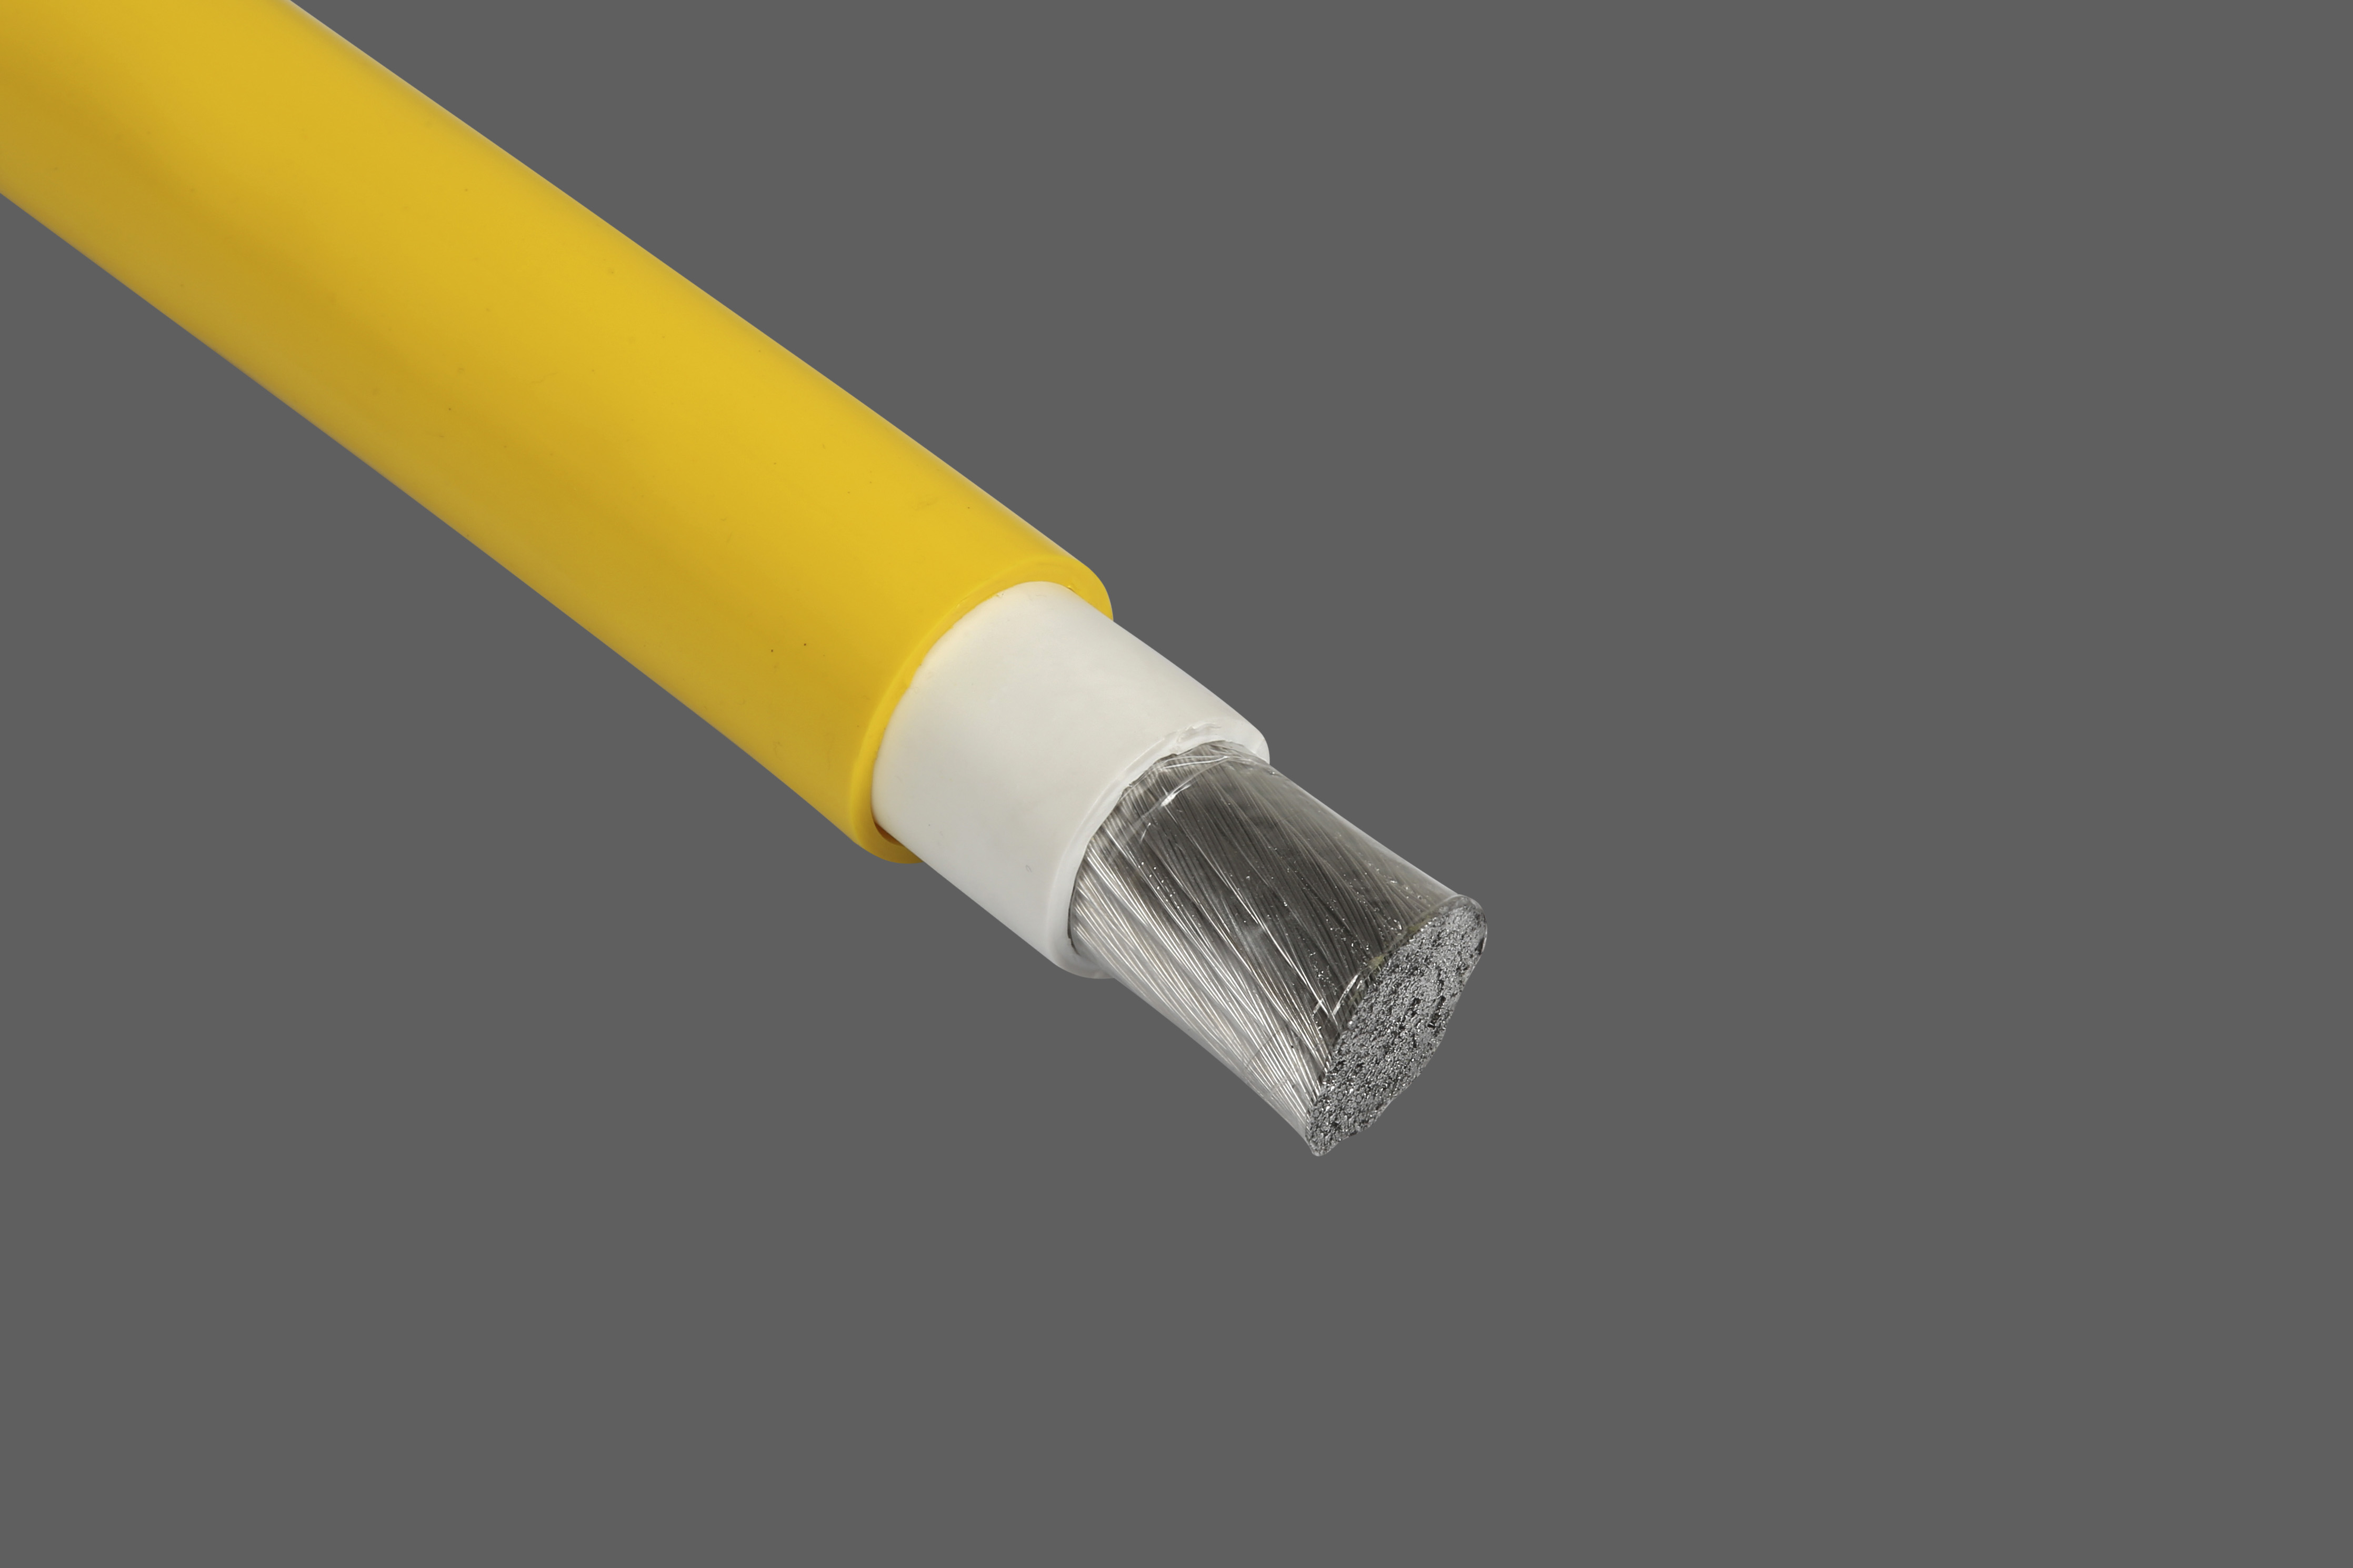 H07BQ-AF / S07BQ-AF Aluminium flexbile cable (class 5)